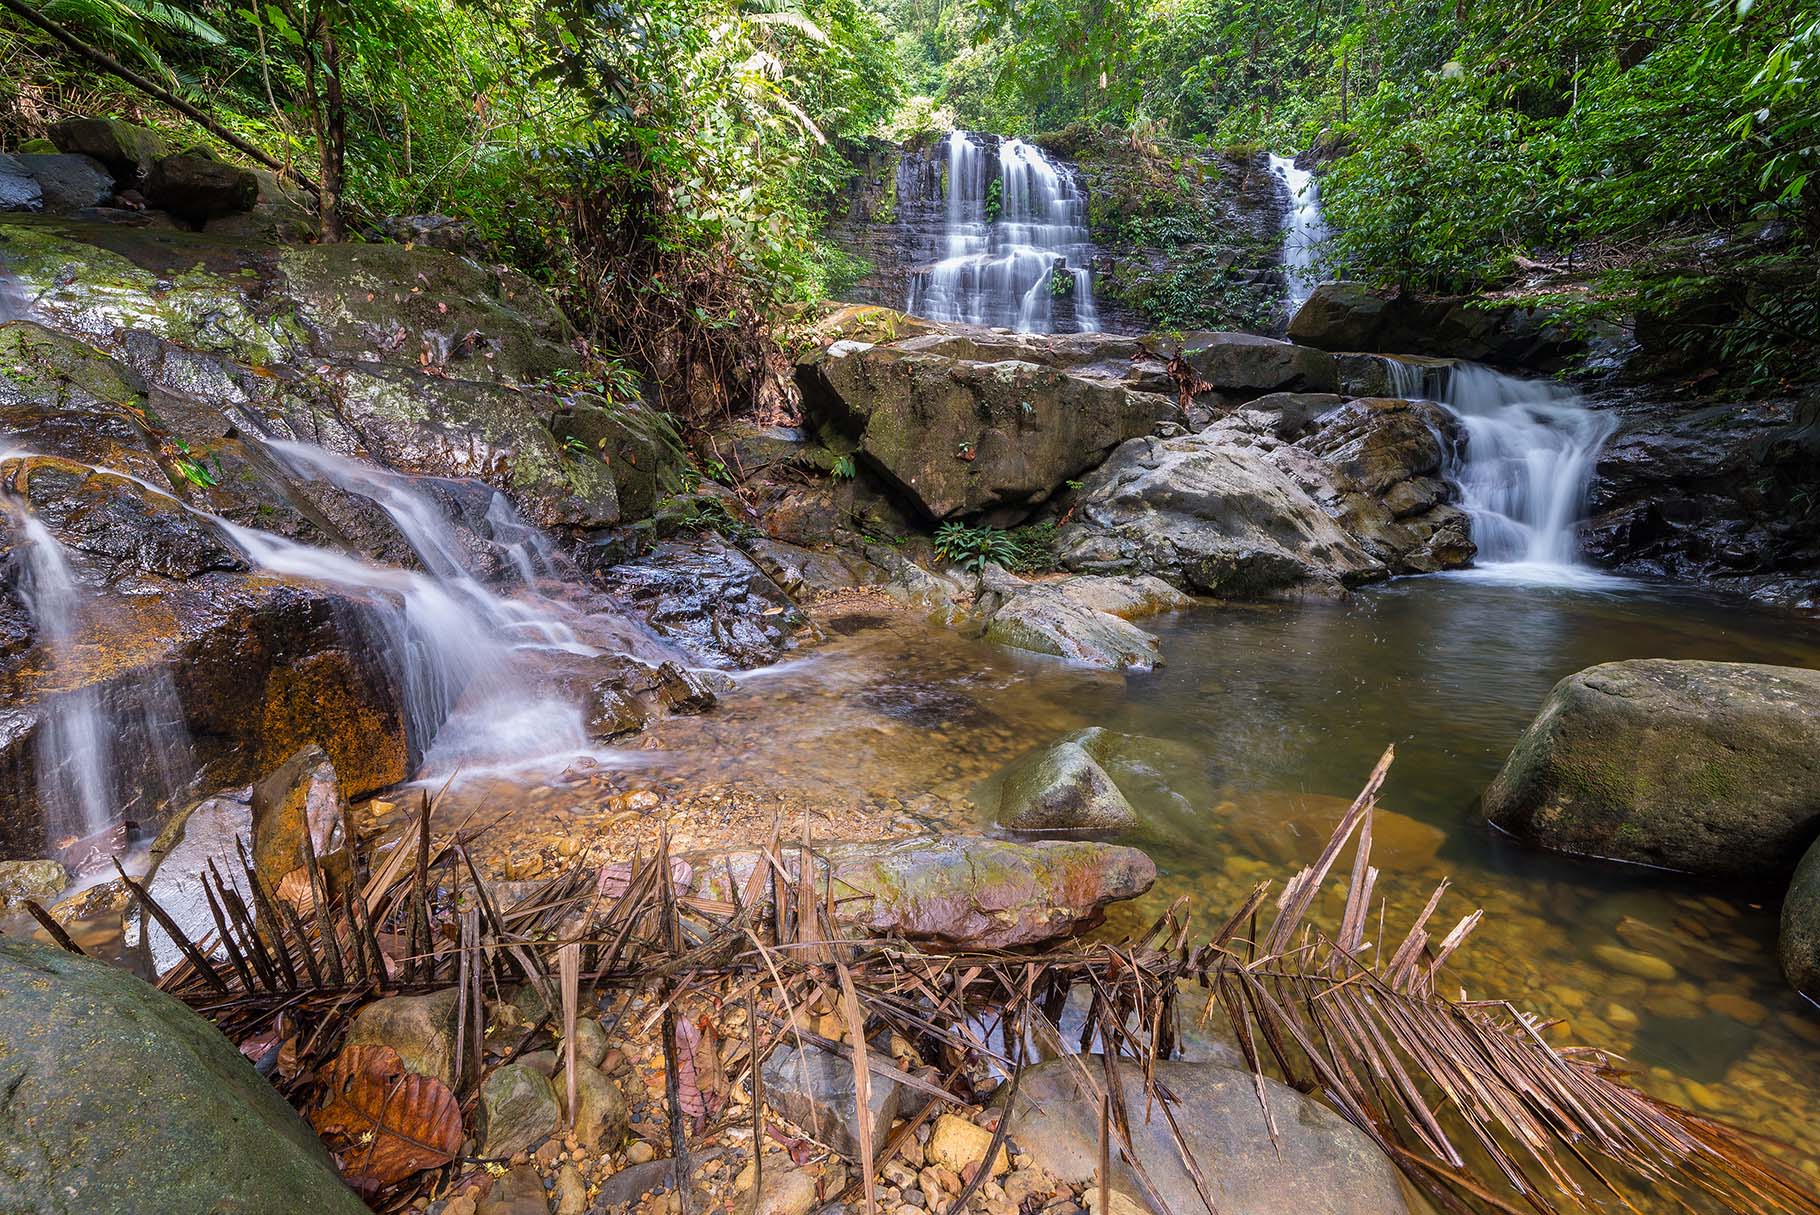 Chiling Falls in Selangor